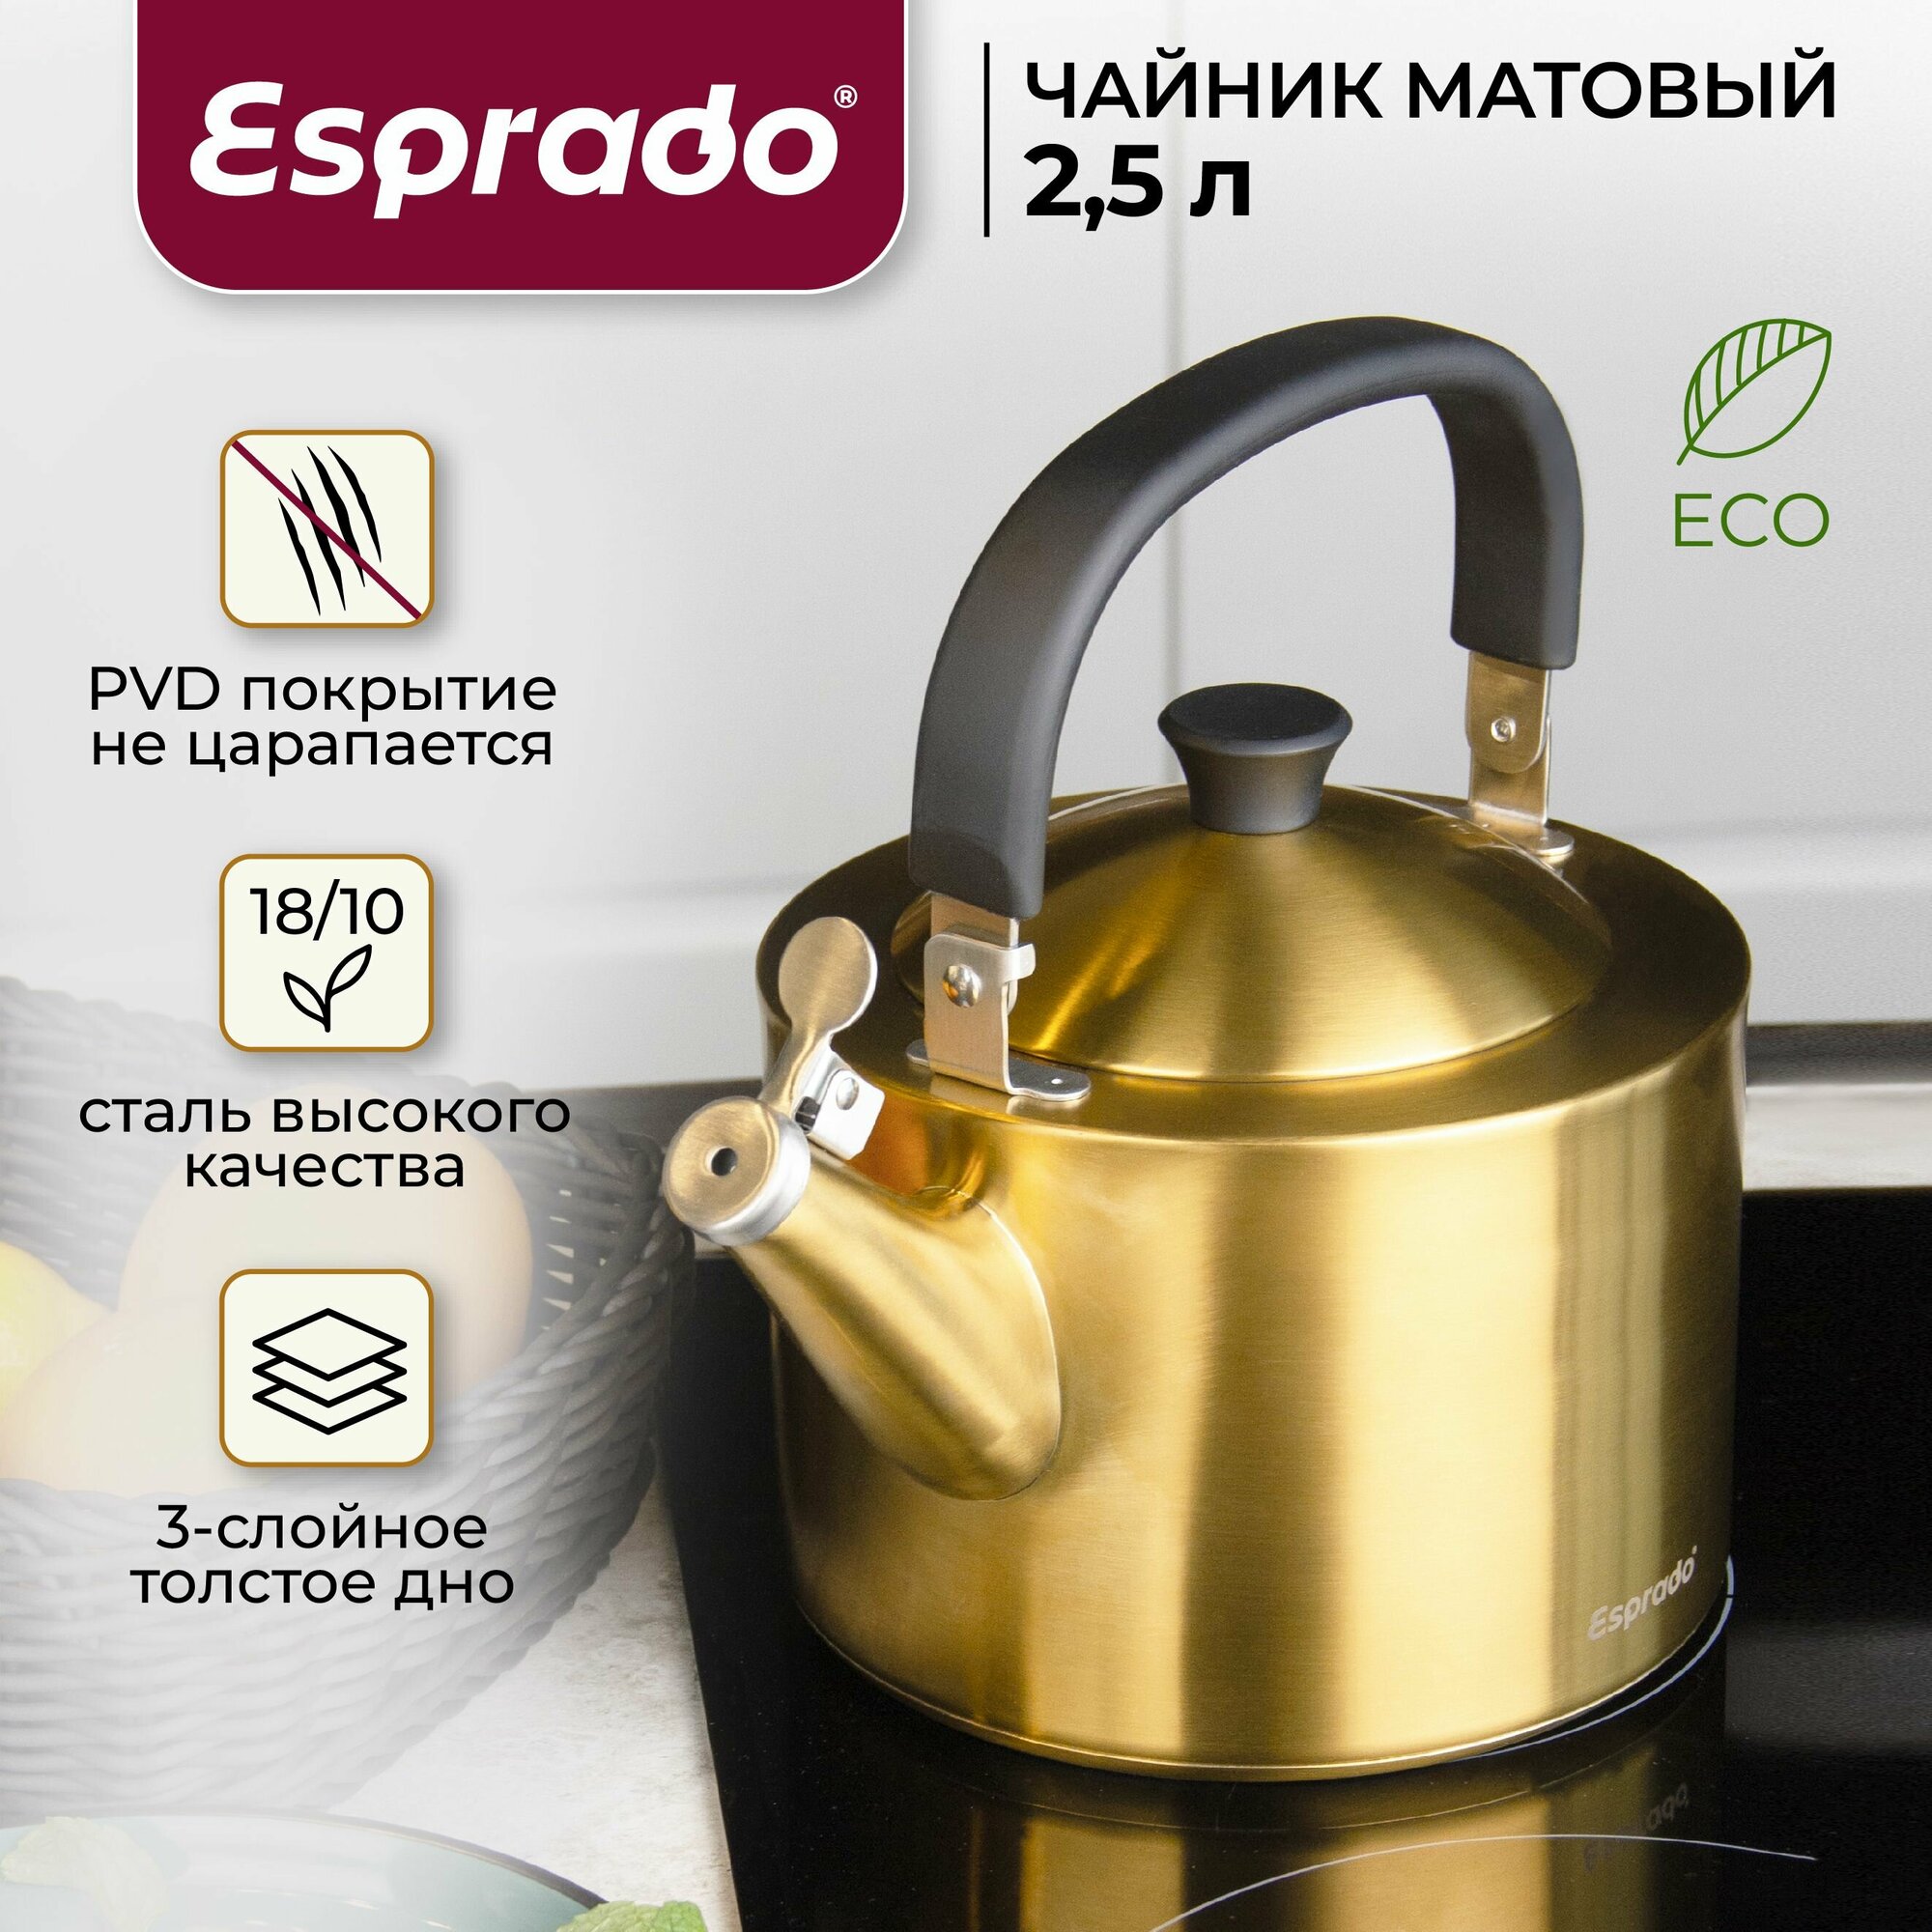 Чайник из нержавеющей стали c PVD покрытием, 2,5 л, матовый золотой Esprado Magnifico